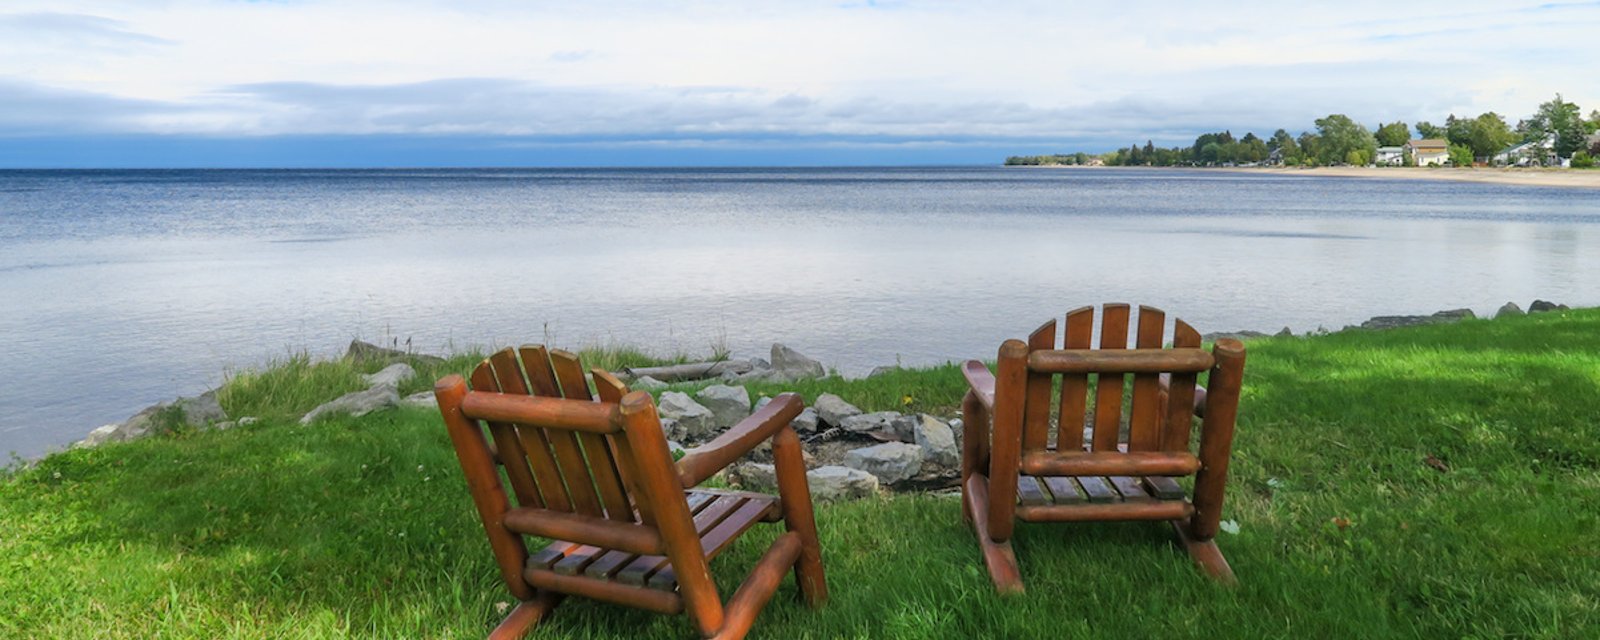 La rumeur est vraie: c’est au Saguenay-Lac-Saint-Jean qu’on lève plus le coude!